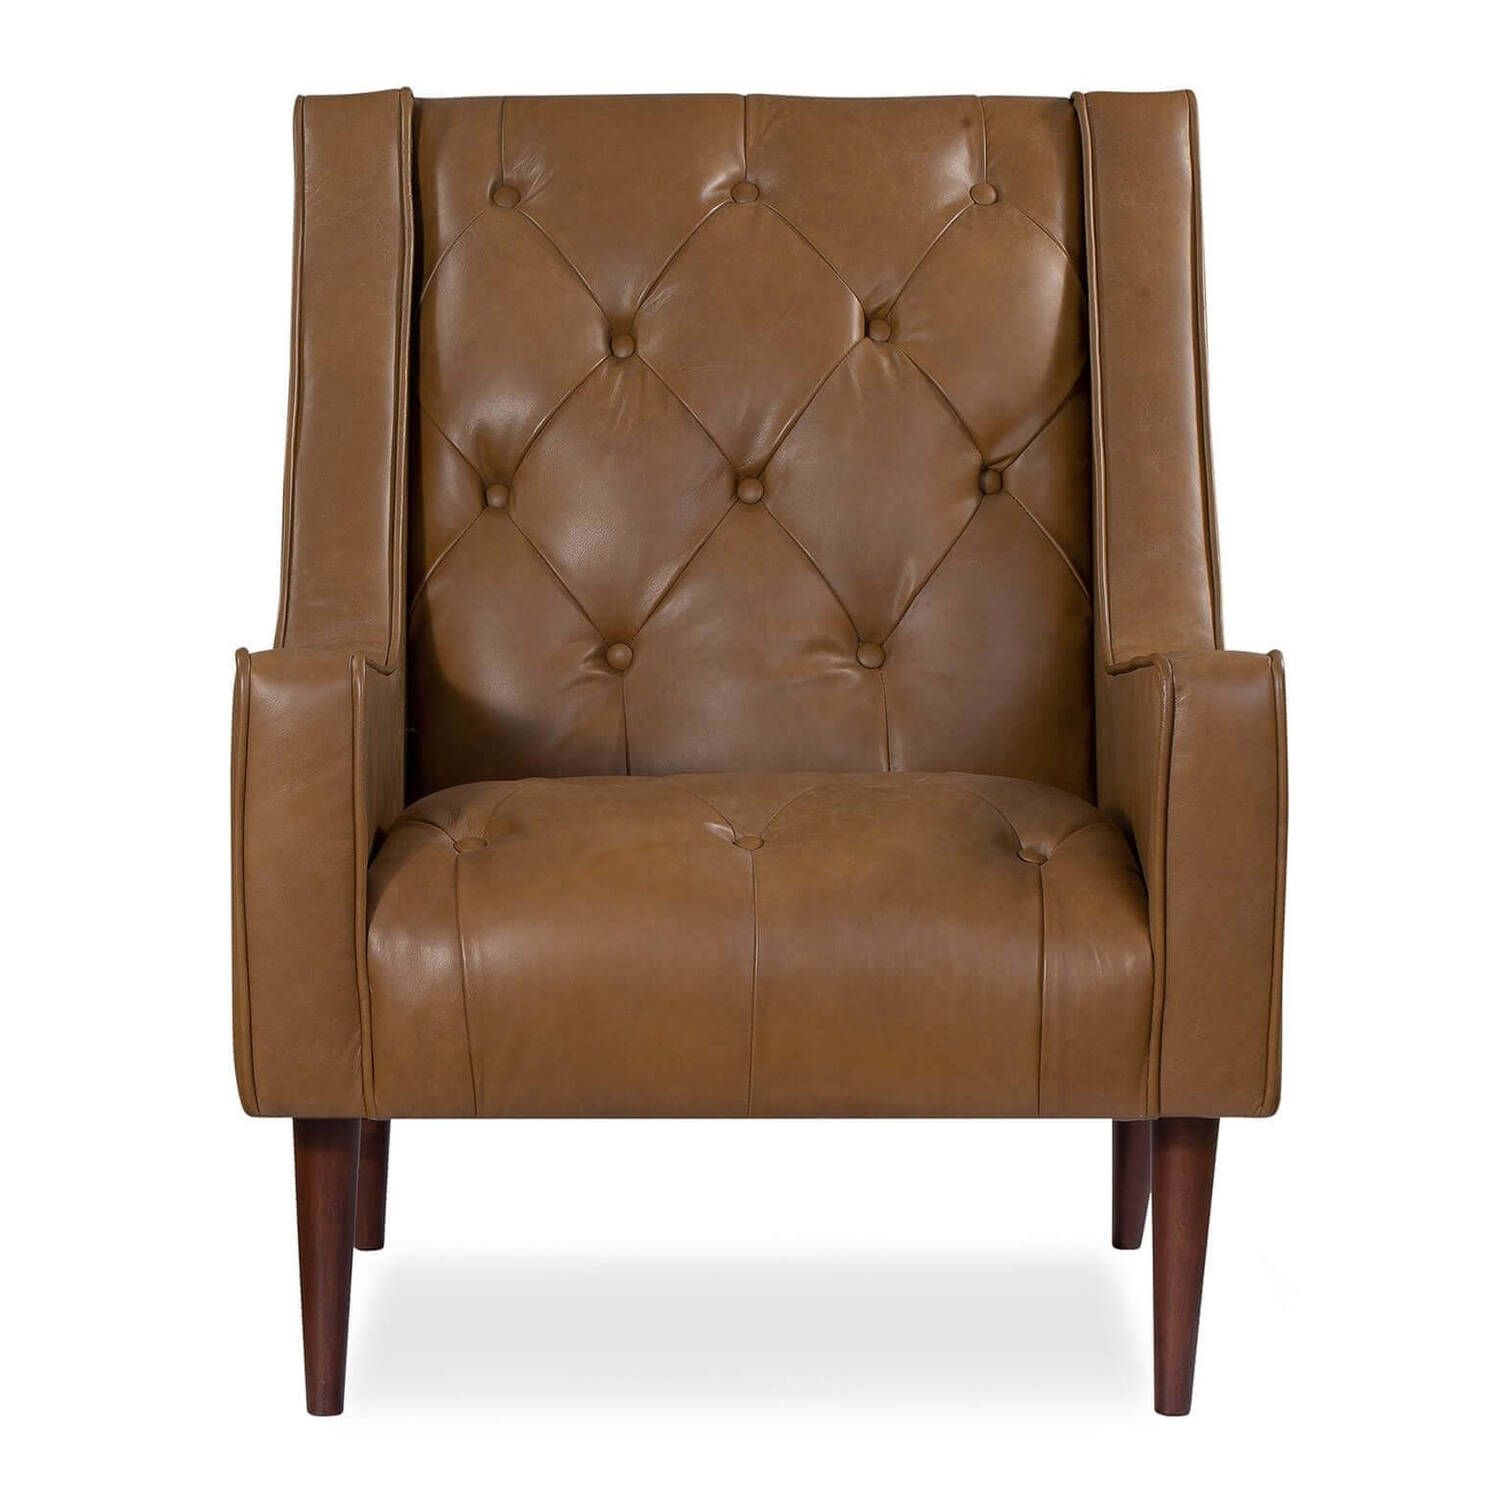 Кресло Krisel, коричневое, натуральная кожа